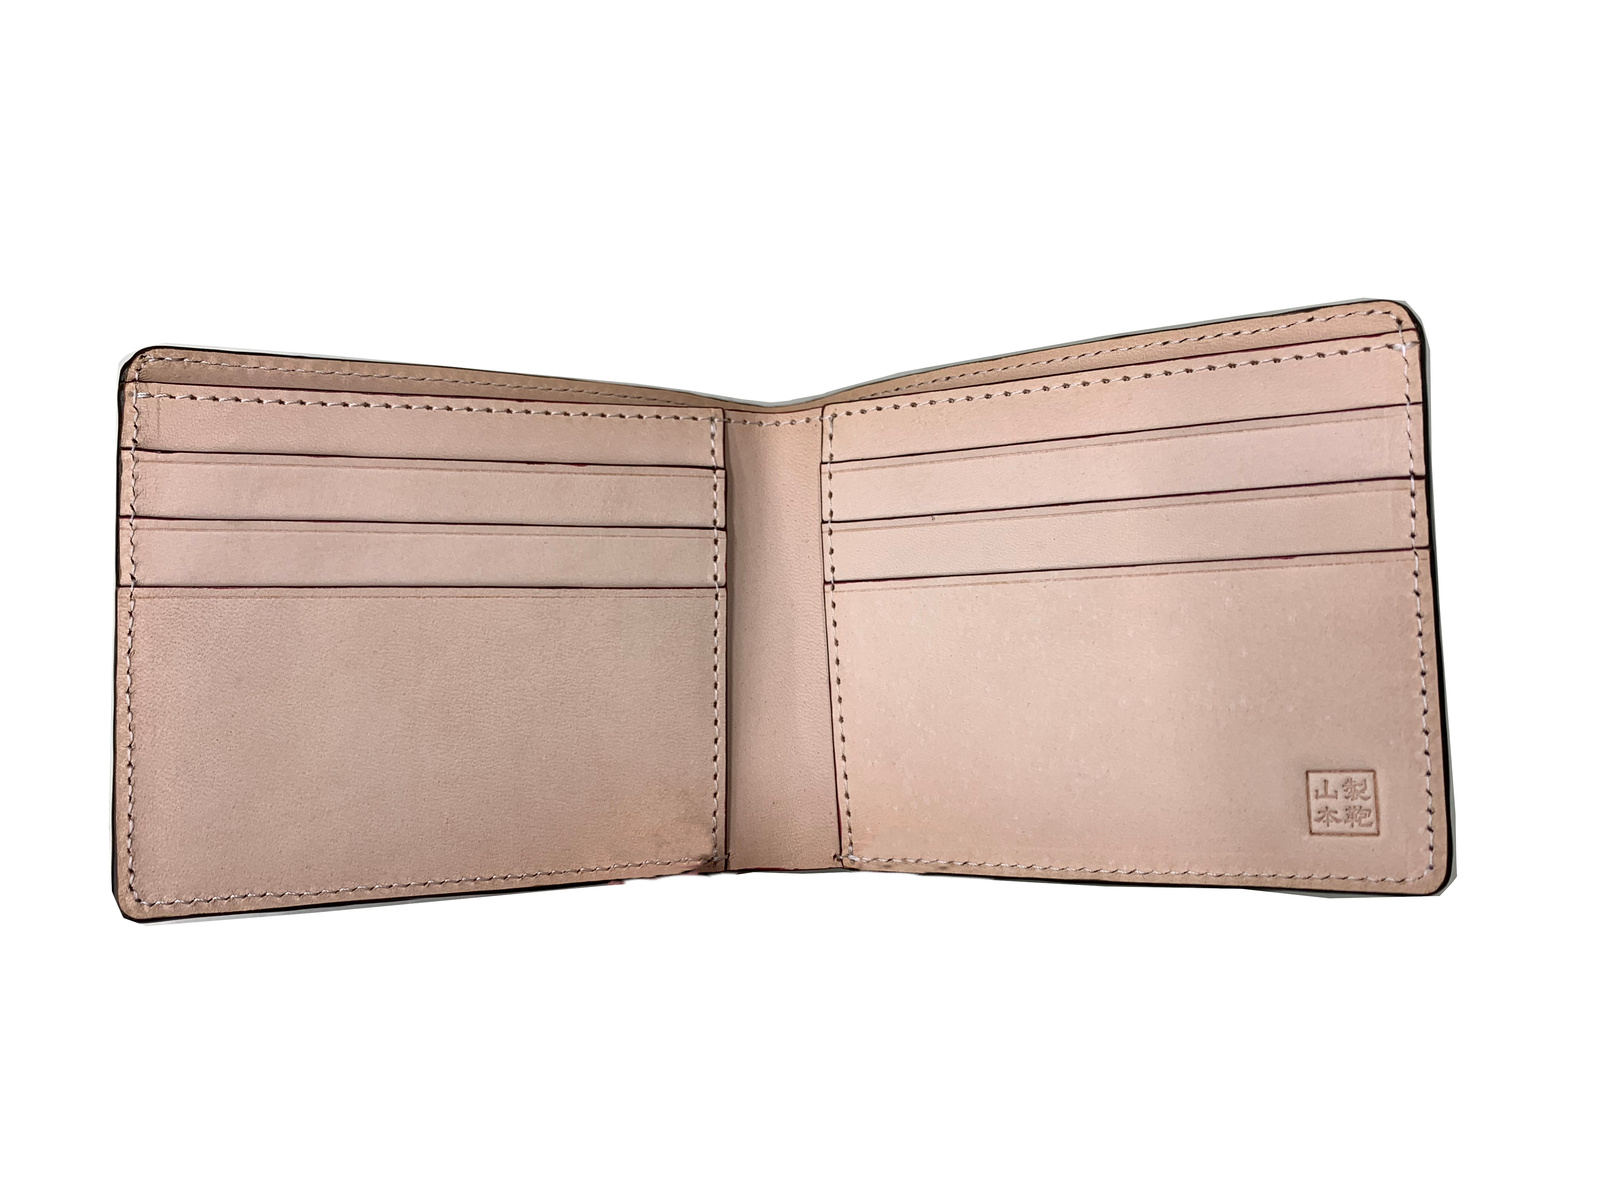 クロコダイル 二つ折り財布 山本製鞄 メンズ 本革 日本製 カーキ 財布